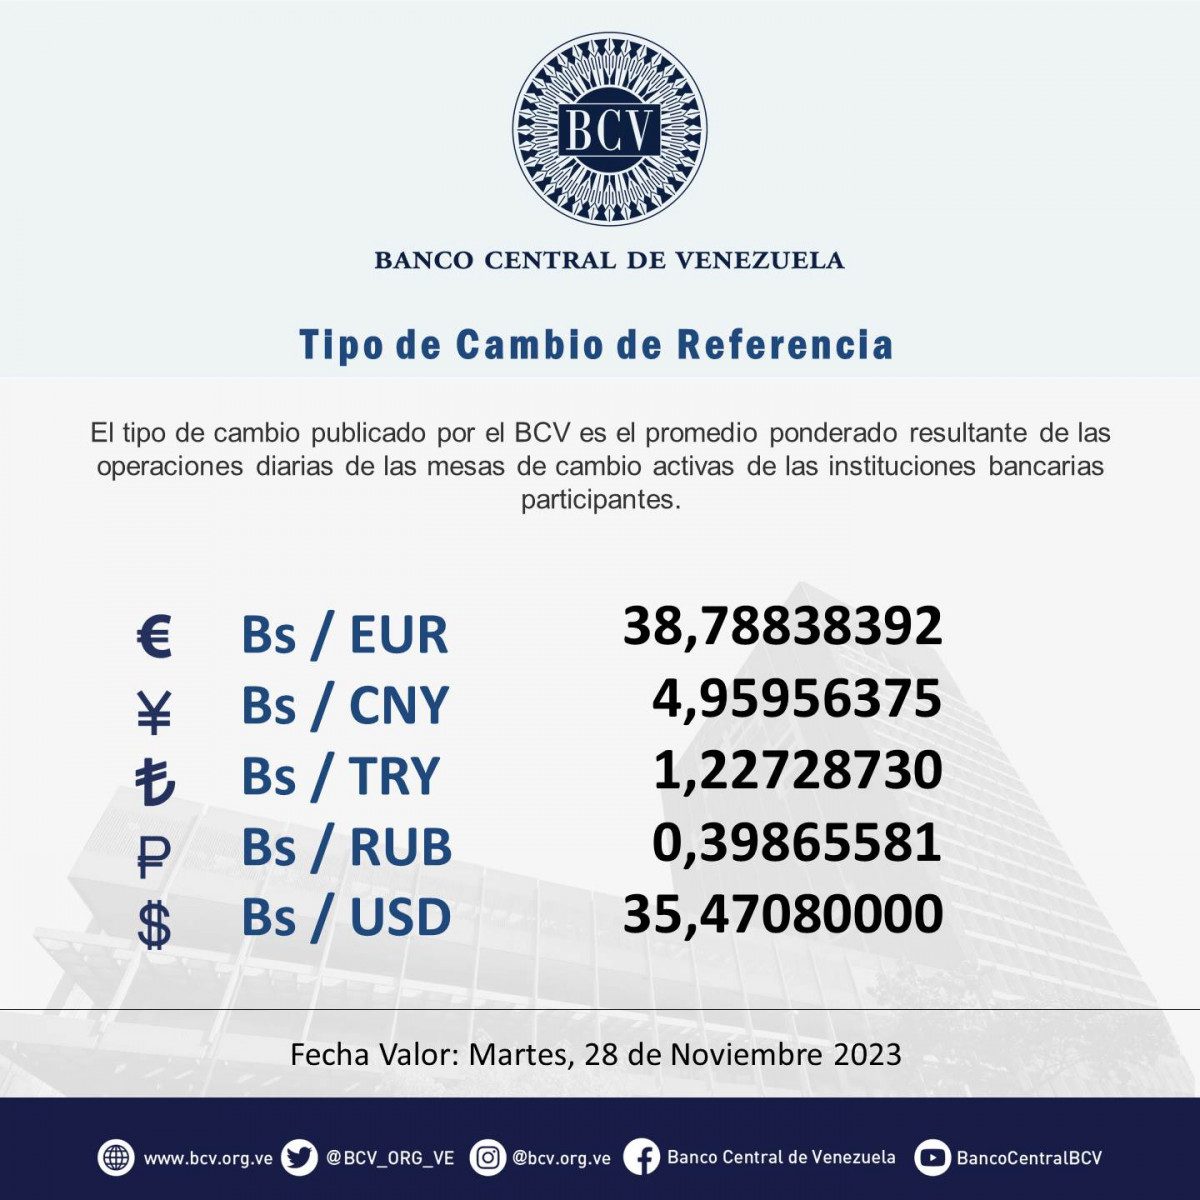 dolartoday en venezuela precio del dolar este 28 de noviembre de 2023 laverdaddemonagas.com bcv65